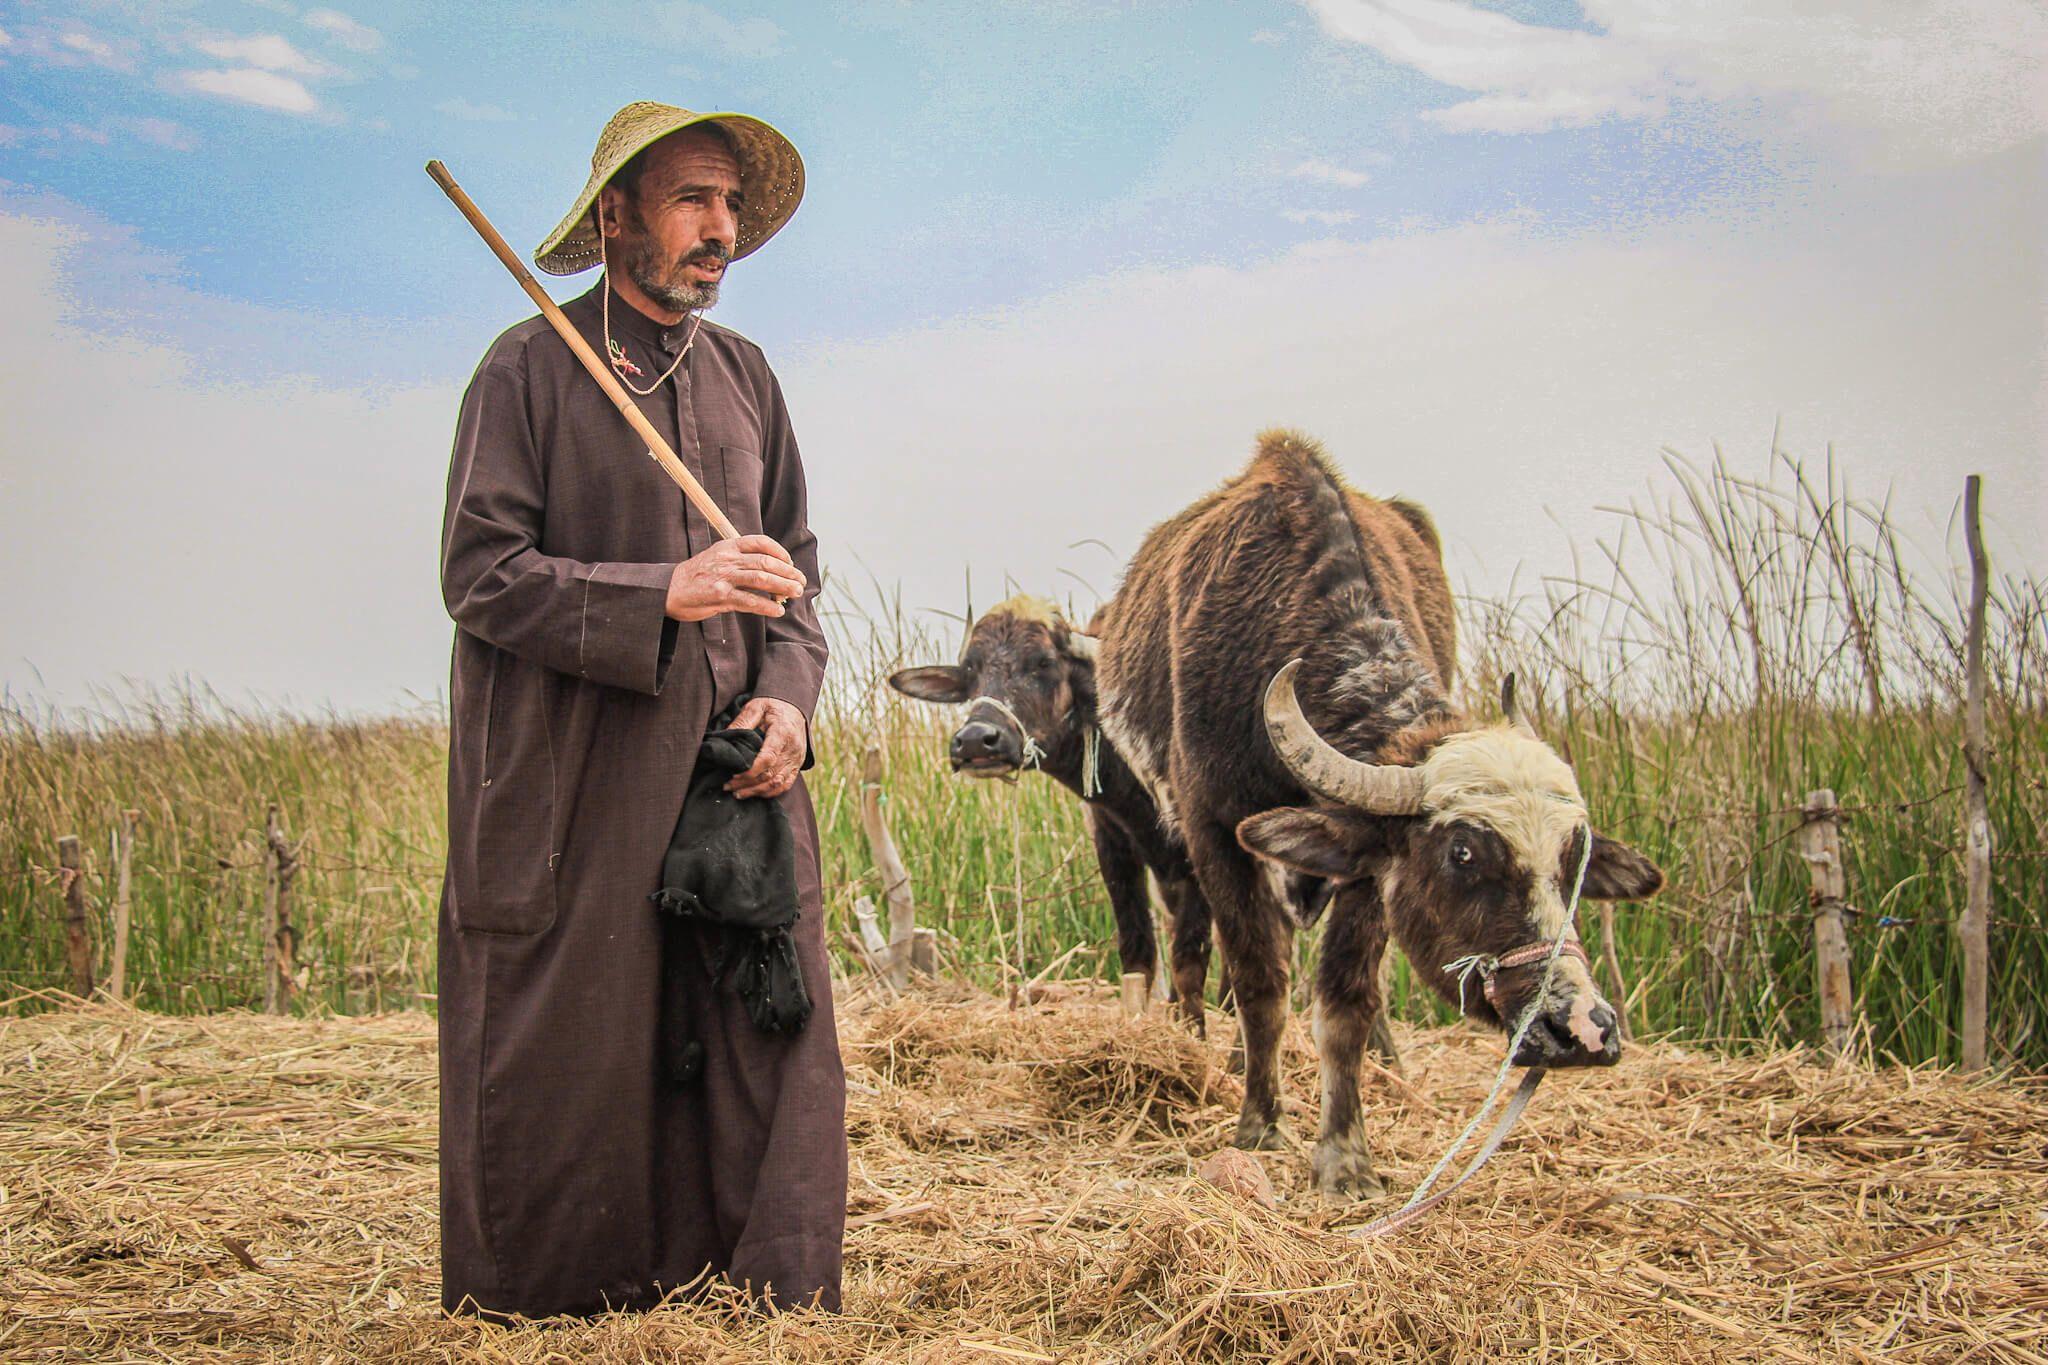 تصوير: حمد الشاهر
المزارع وهو يرعى رزقه قبل التغير المناخي